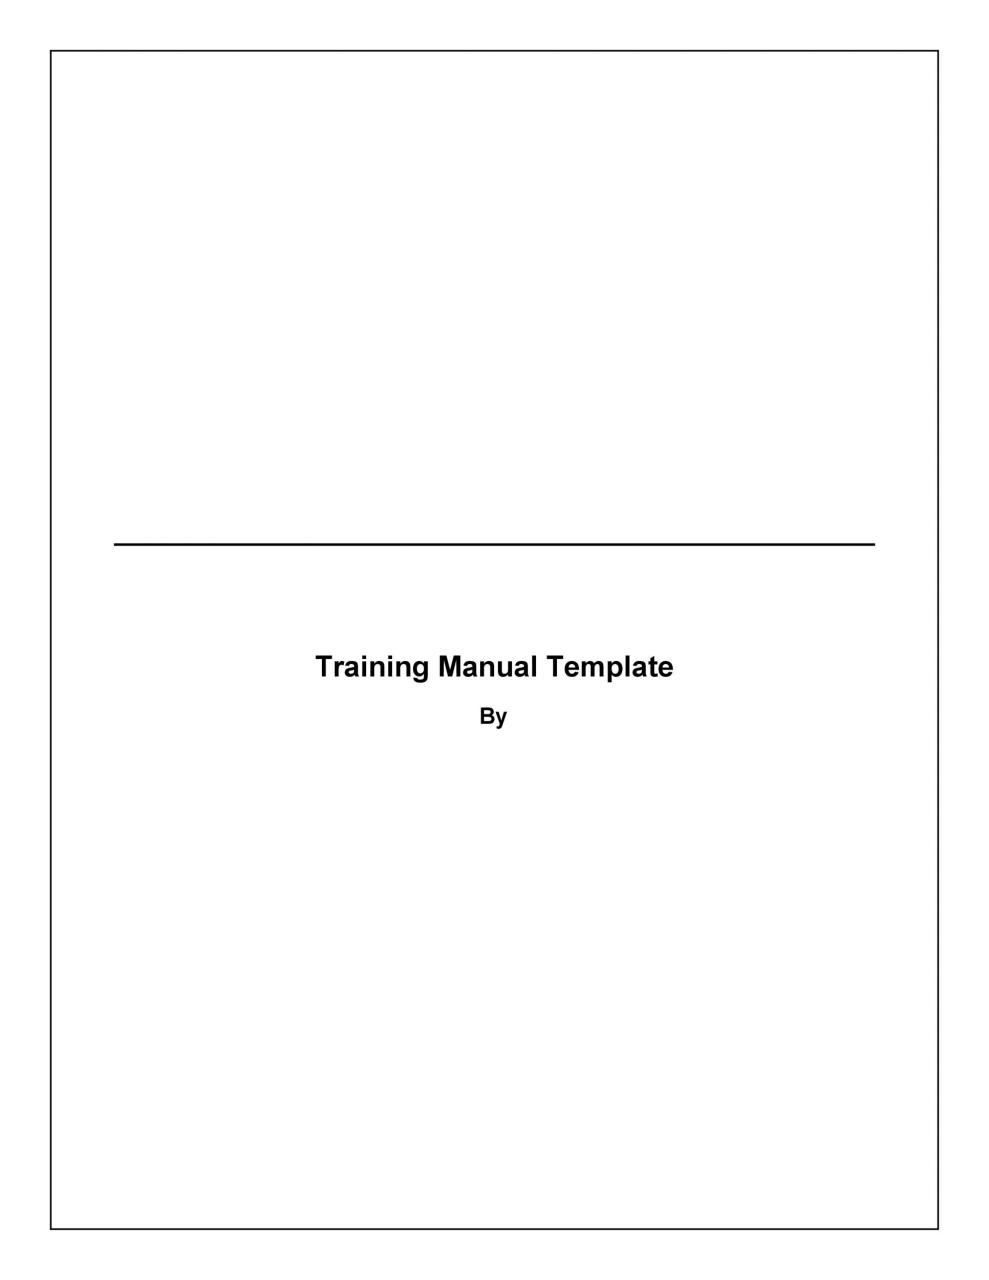 plantilla de manual de entrenamiento gratis 19